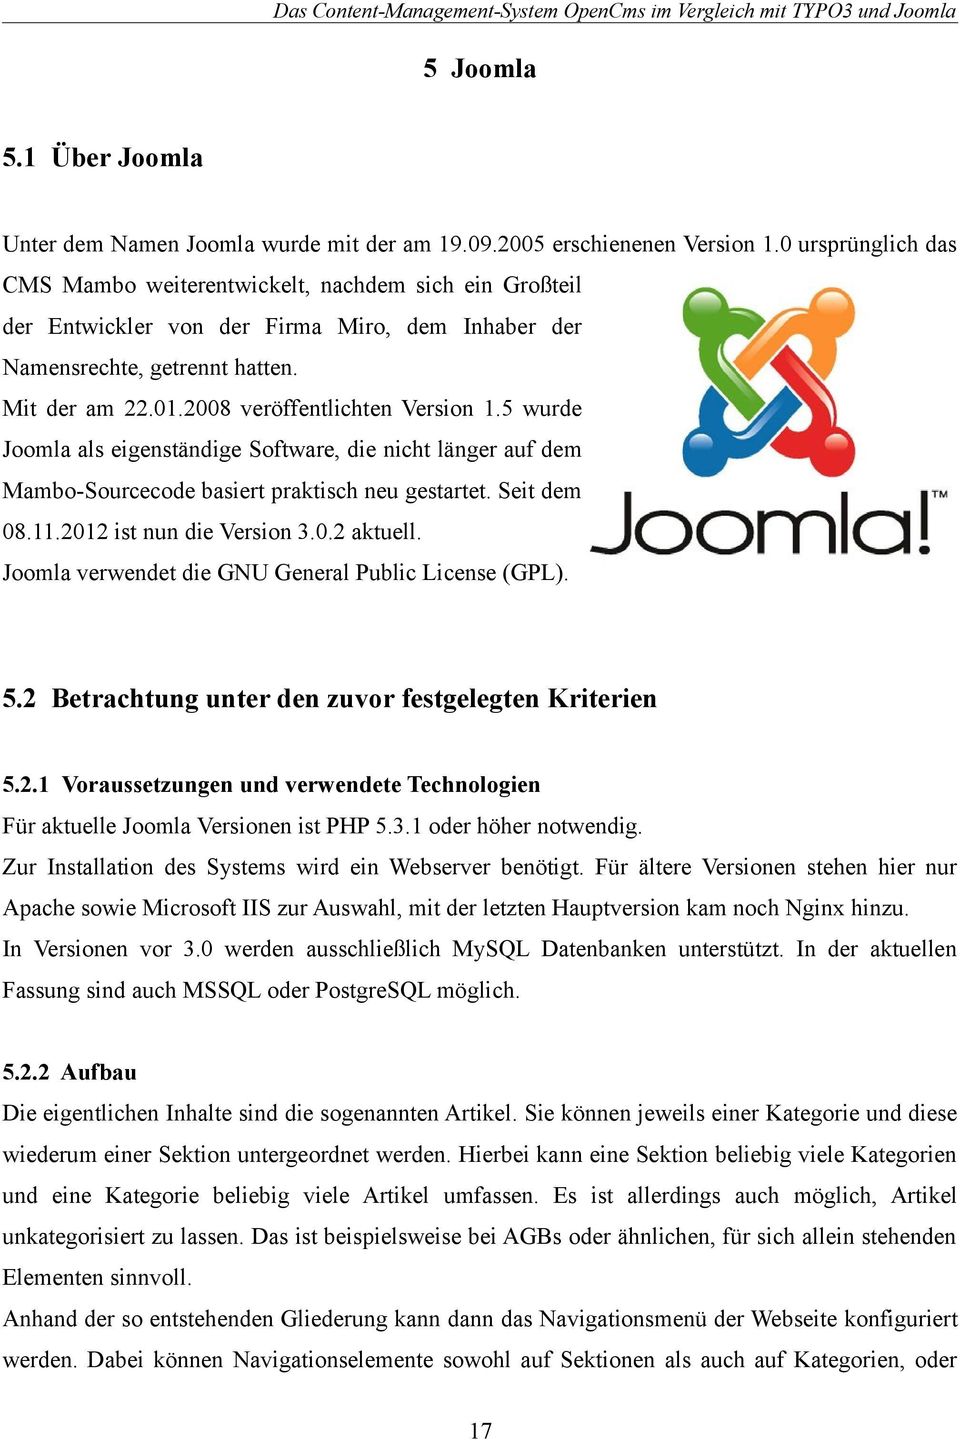 2008 veröffentlichten Version 1.5 wurde Joomla als eigenständige Software, die nicht länger auf dem Mambo-Sourcecode basiert praktisch neu gestartet. Seit dem 08.11.2012 ist nun die Version 3.0.2 aktuell.